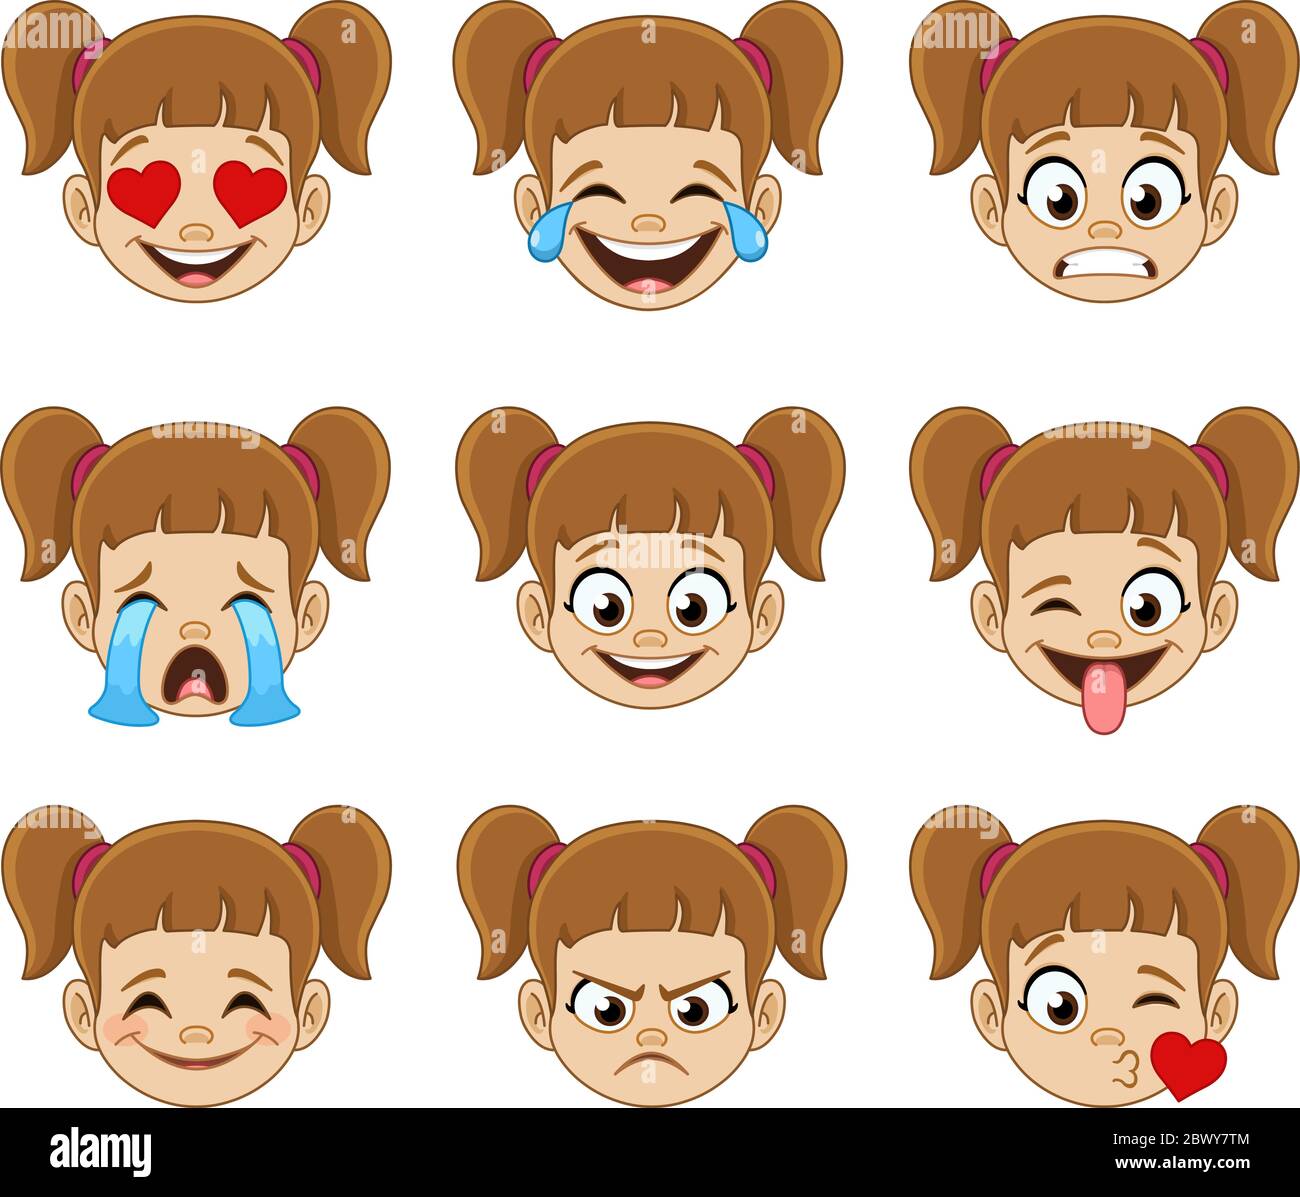 Emoji visage expressions collection d'une jeune fille avec des queues de cheval Illustration de Vecteur